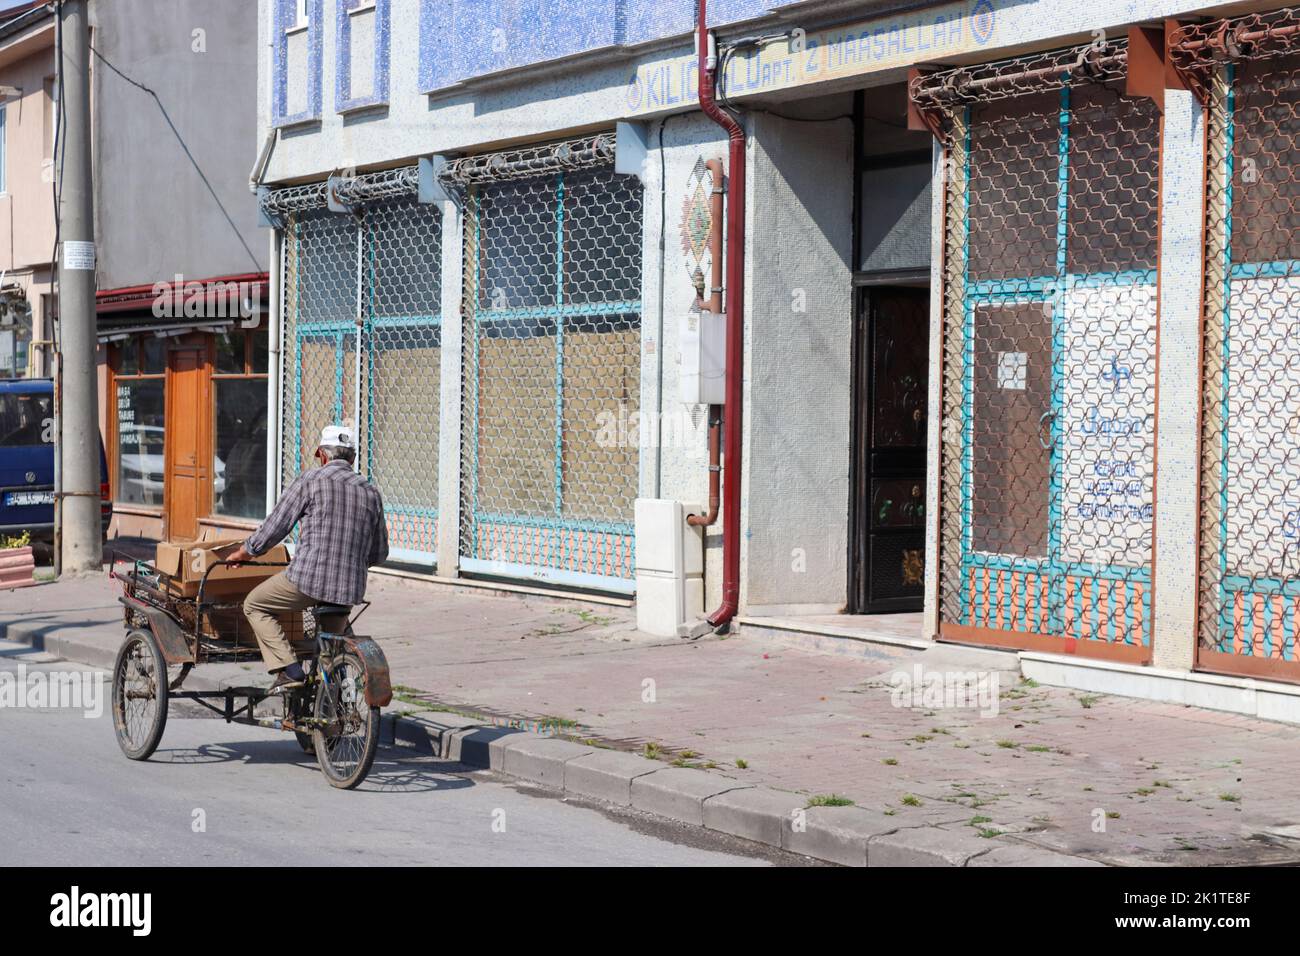 Sakarya, Turkey - August 2018  Sakarya street Scenes Life in Sakarya. The man crossing the street on his bicycle. 3 Wheel bike. Stock Photo